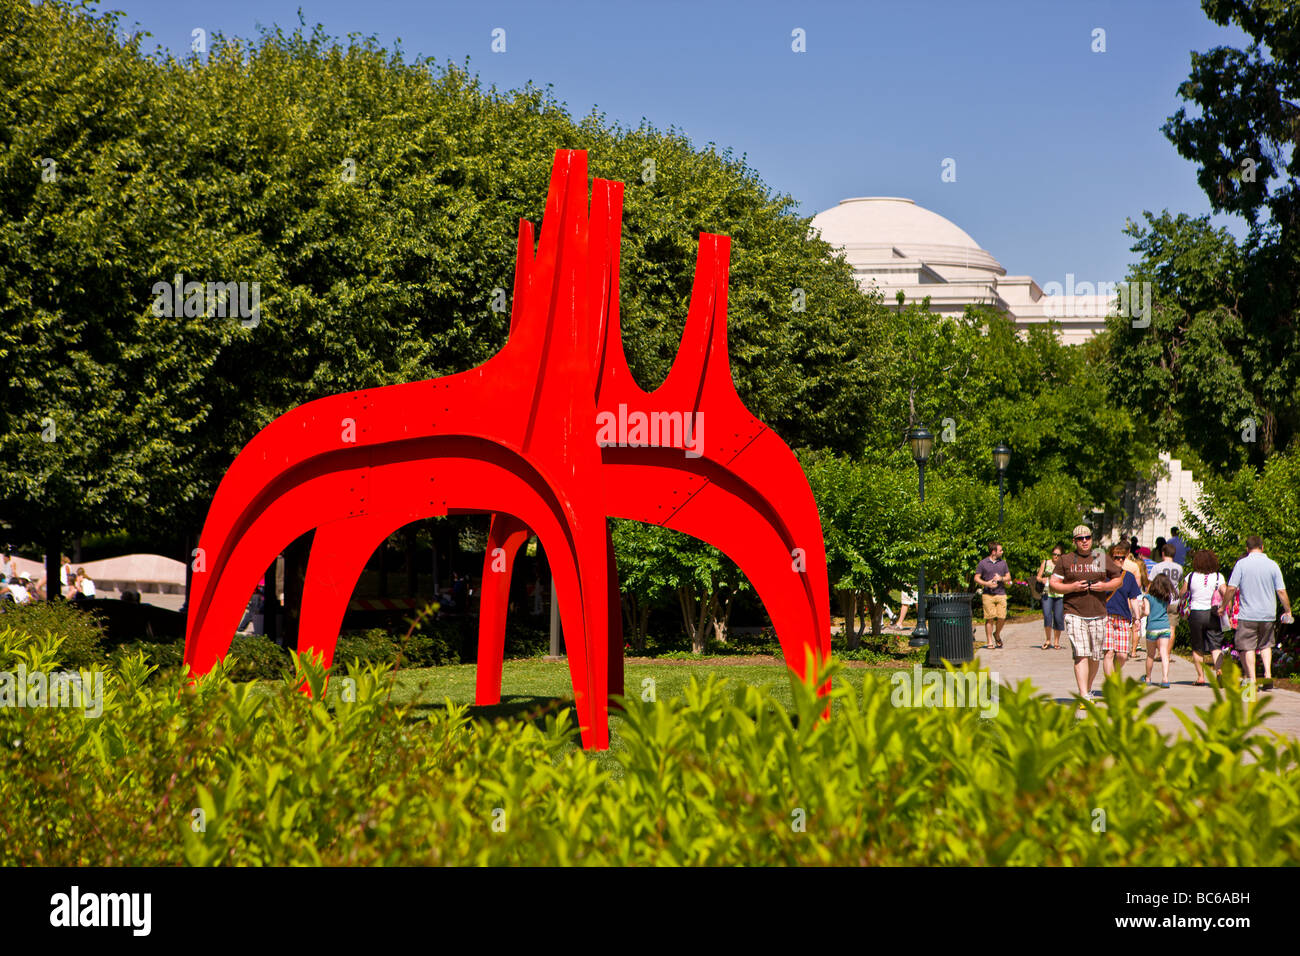 WASHINGTON DC USA Cheval Rouge sculpture d'Alexander Calder à la National Gallery of Art Sculpture Garden Banque D'Images